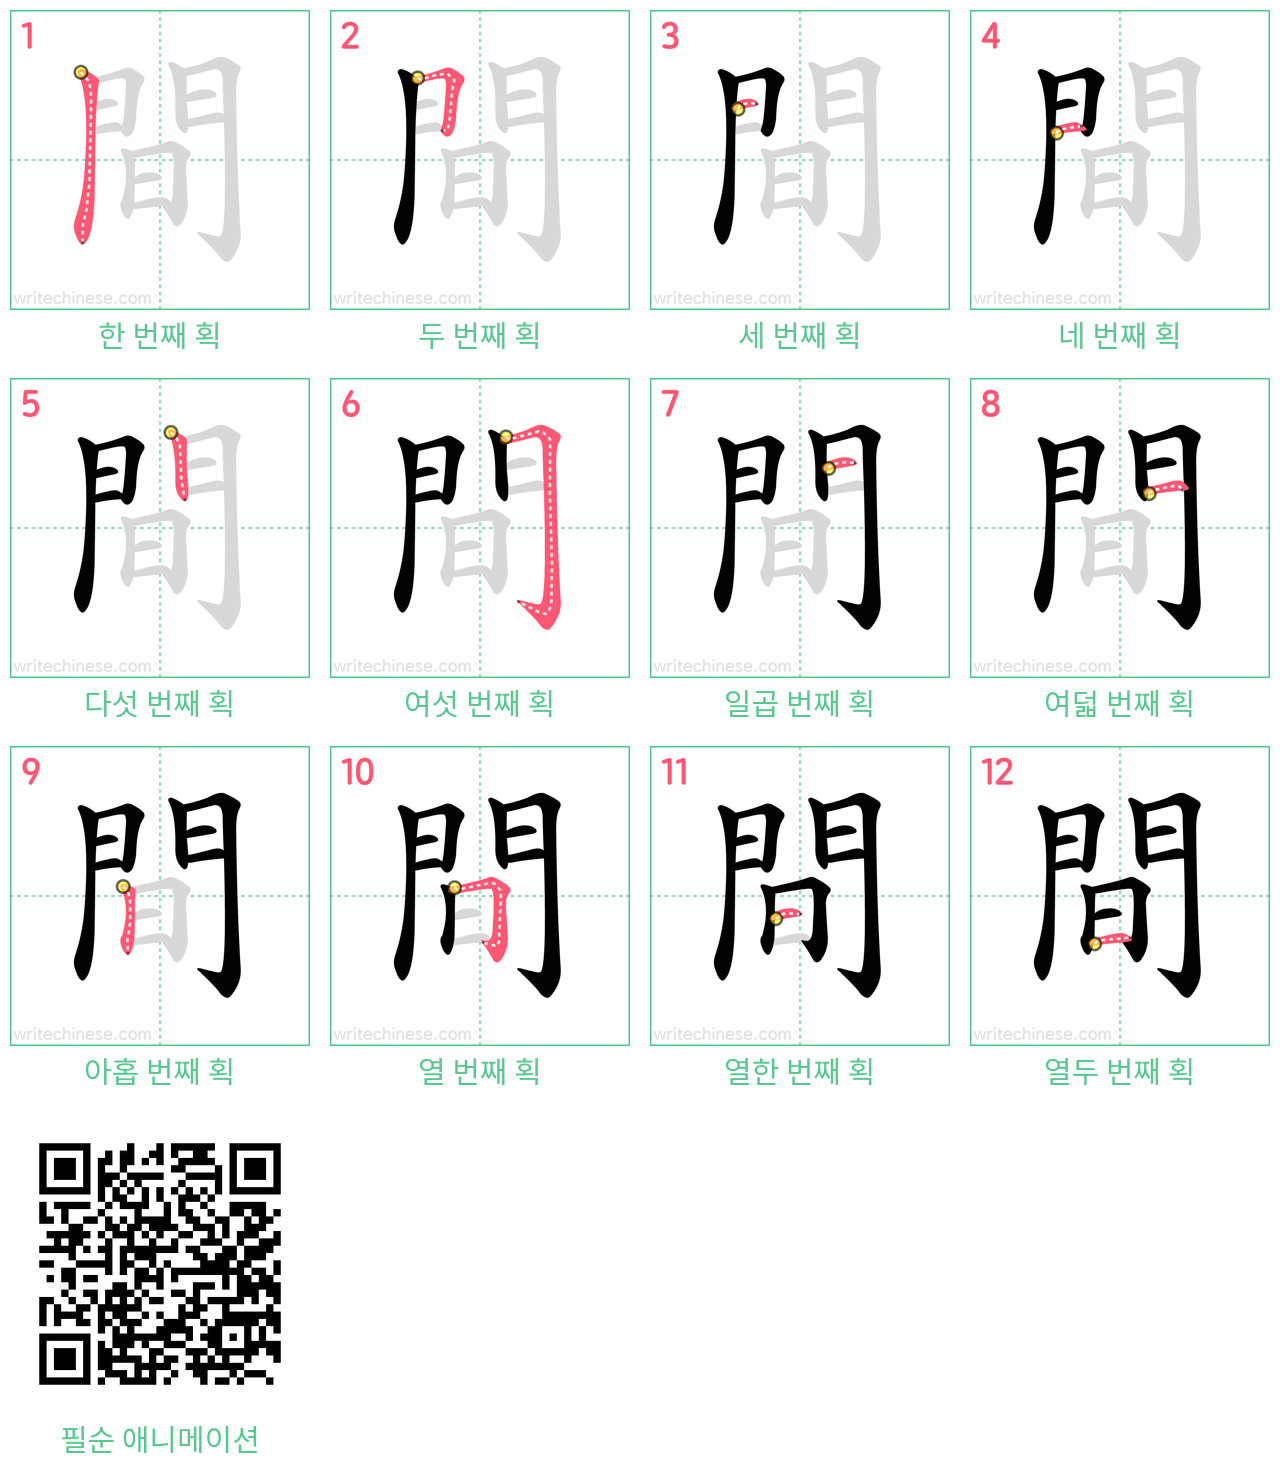 間 step-by-step stroke order diagrams